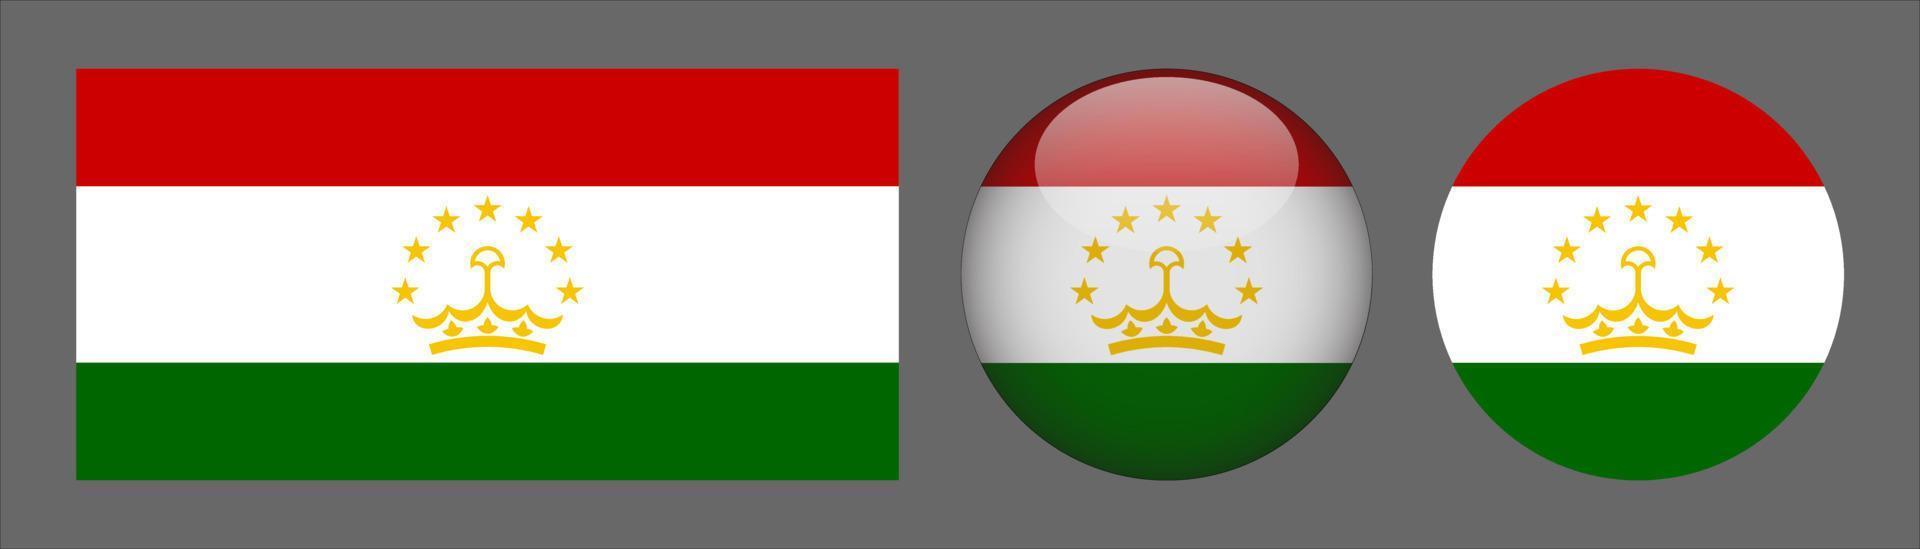 coleção de conjunto de bandeira de tajiquistão, proporção de tamanho original, 3d arredondado e plano arredondado. vetor